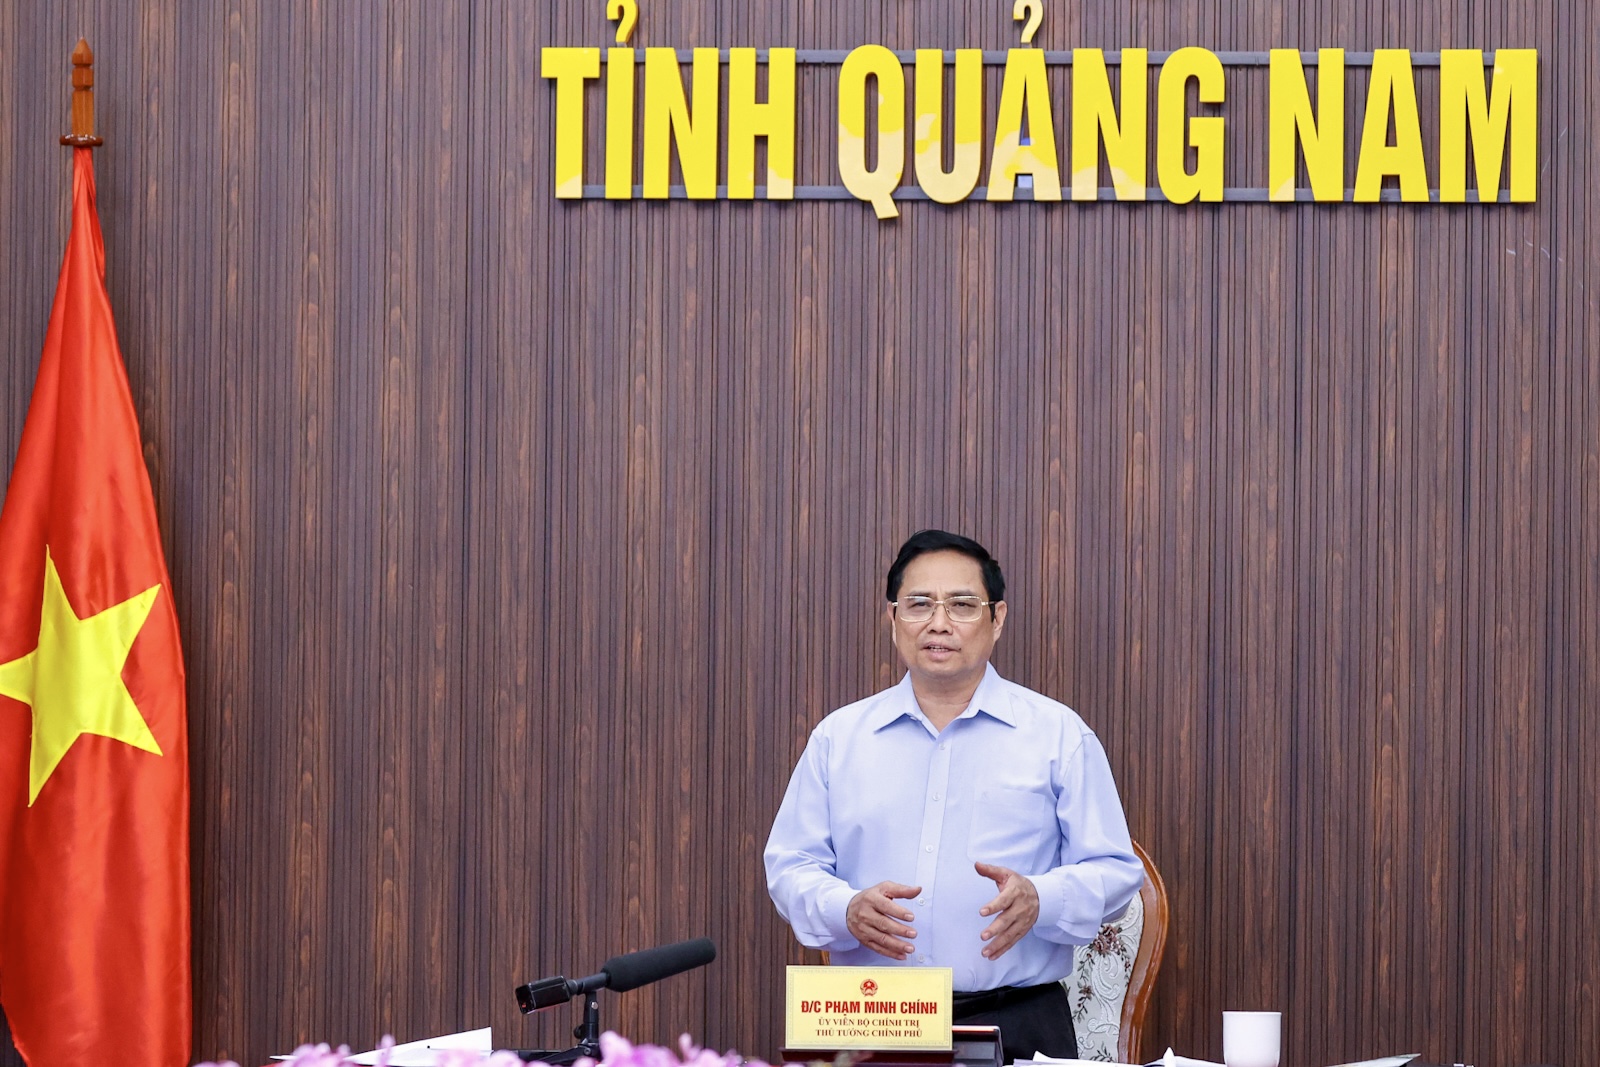 Thủ tướng Phạm Minh Chính: Dùng nguồn vốn công để dẫn dắt, kích hoạt đầu tư tư nhân - Ảnh 2.